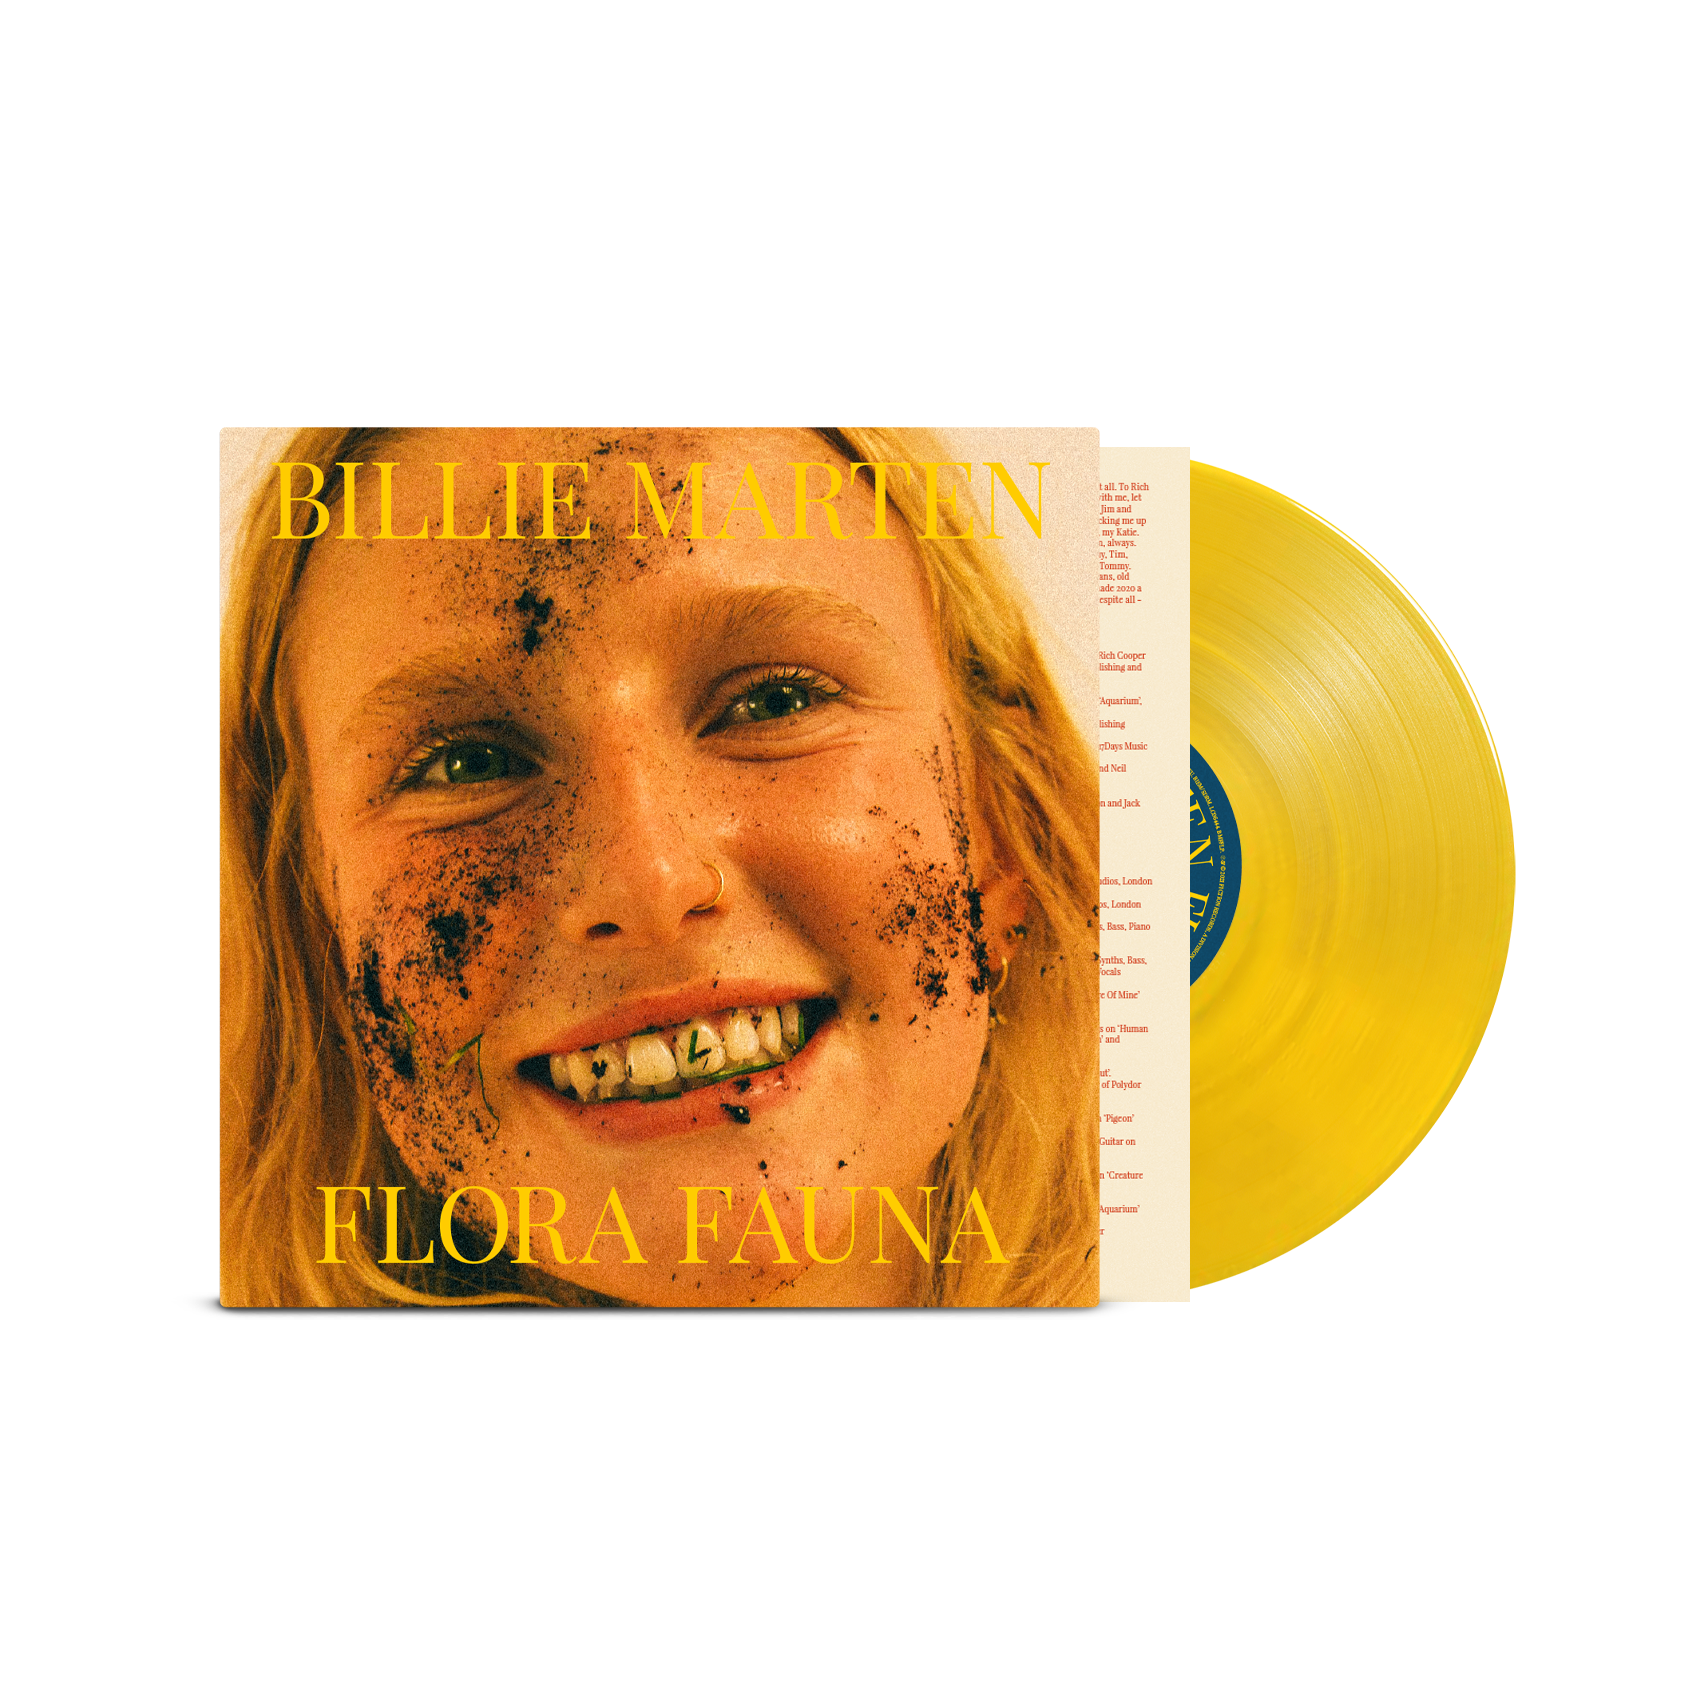 Billie Marten - Flora Fauna: Transparent Sun Yellow Vinyl LP